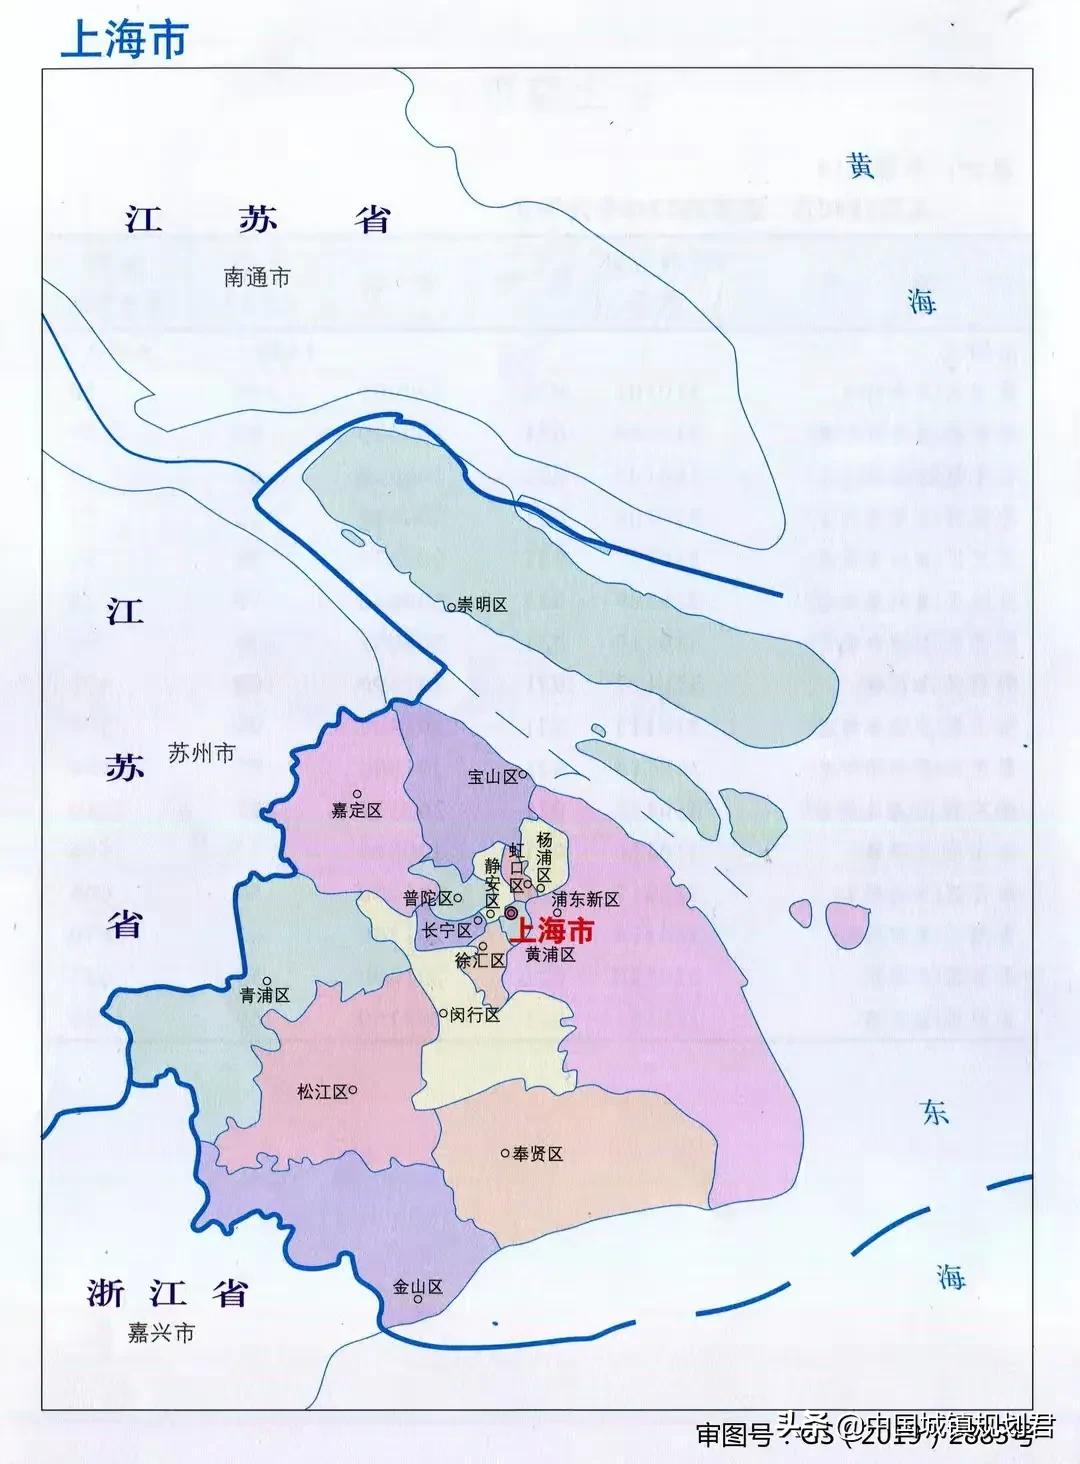 上海市行政区划分析：哪些市辖区处于临外省、临江的优势区位？